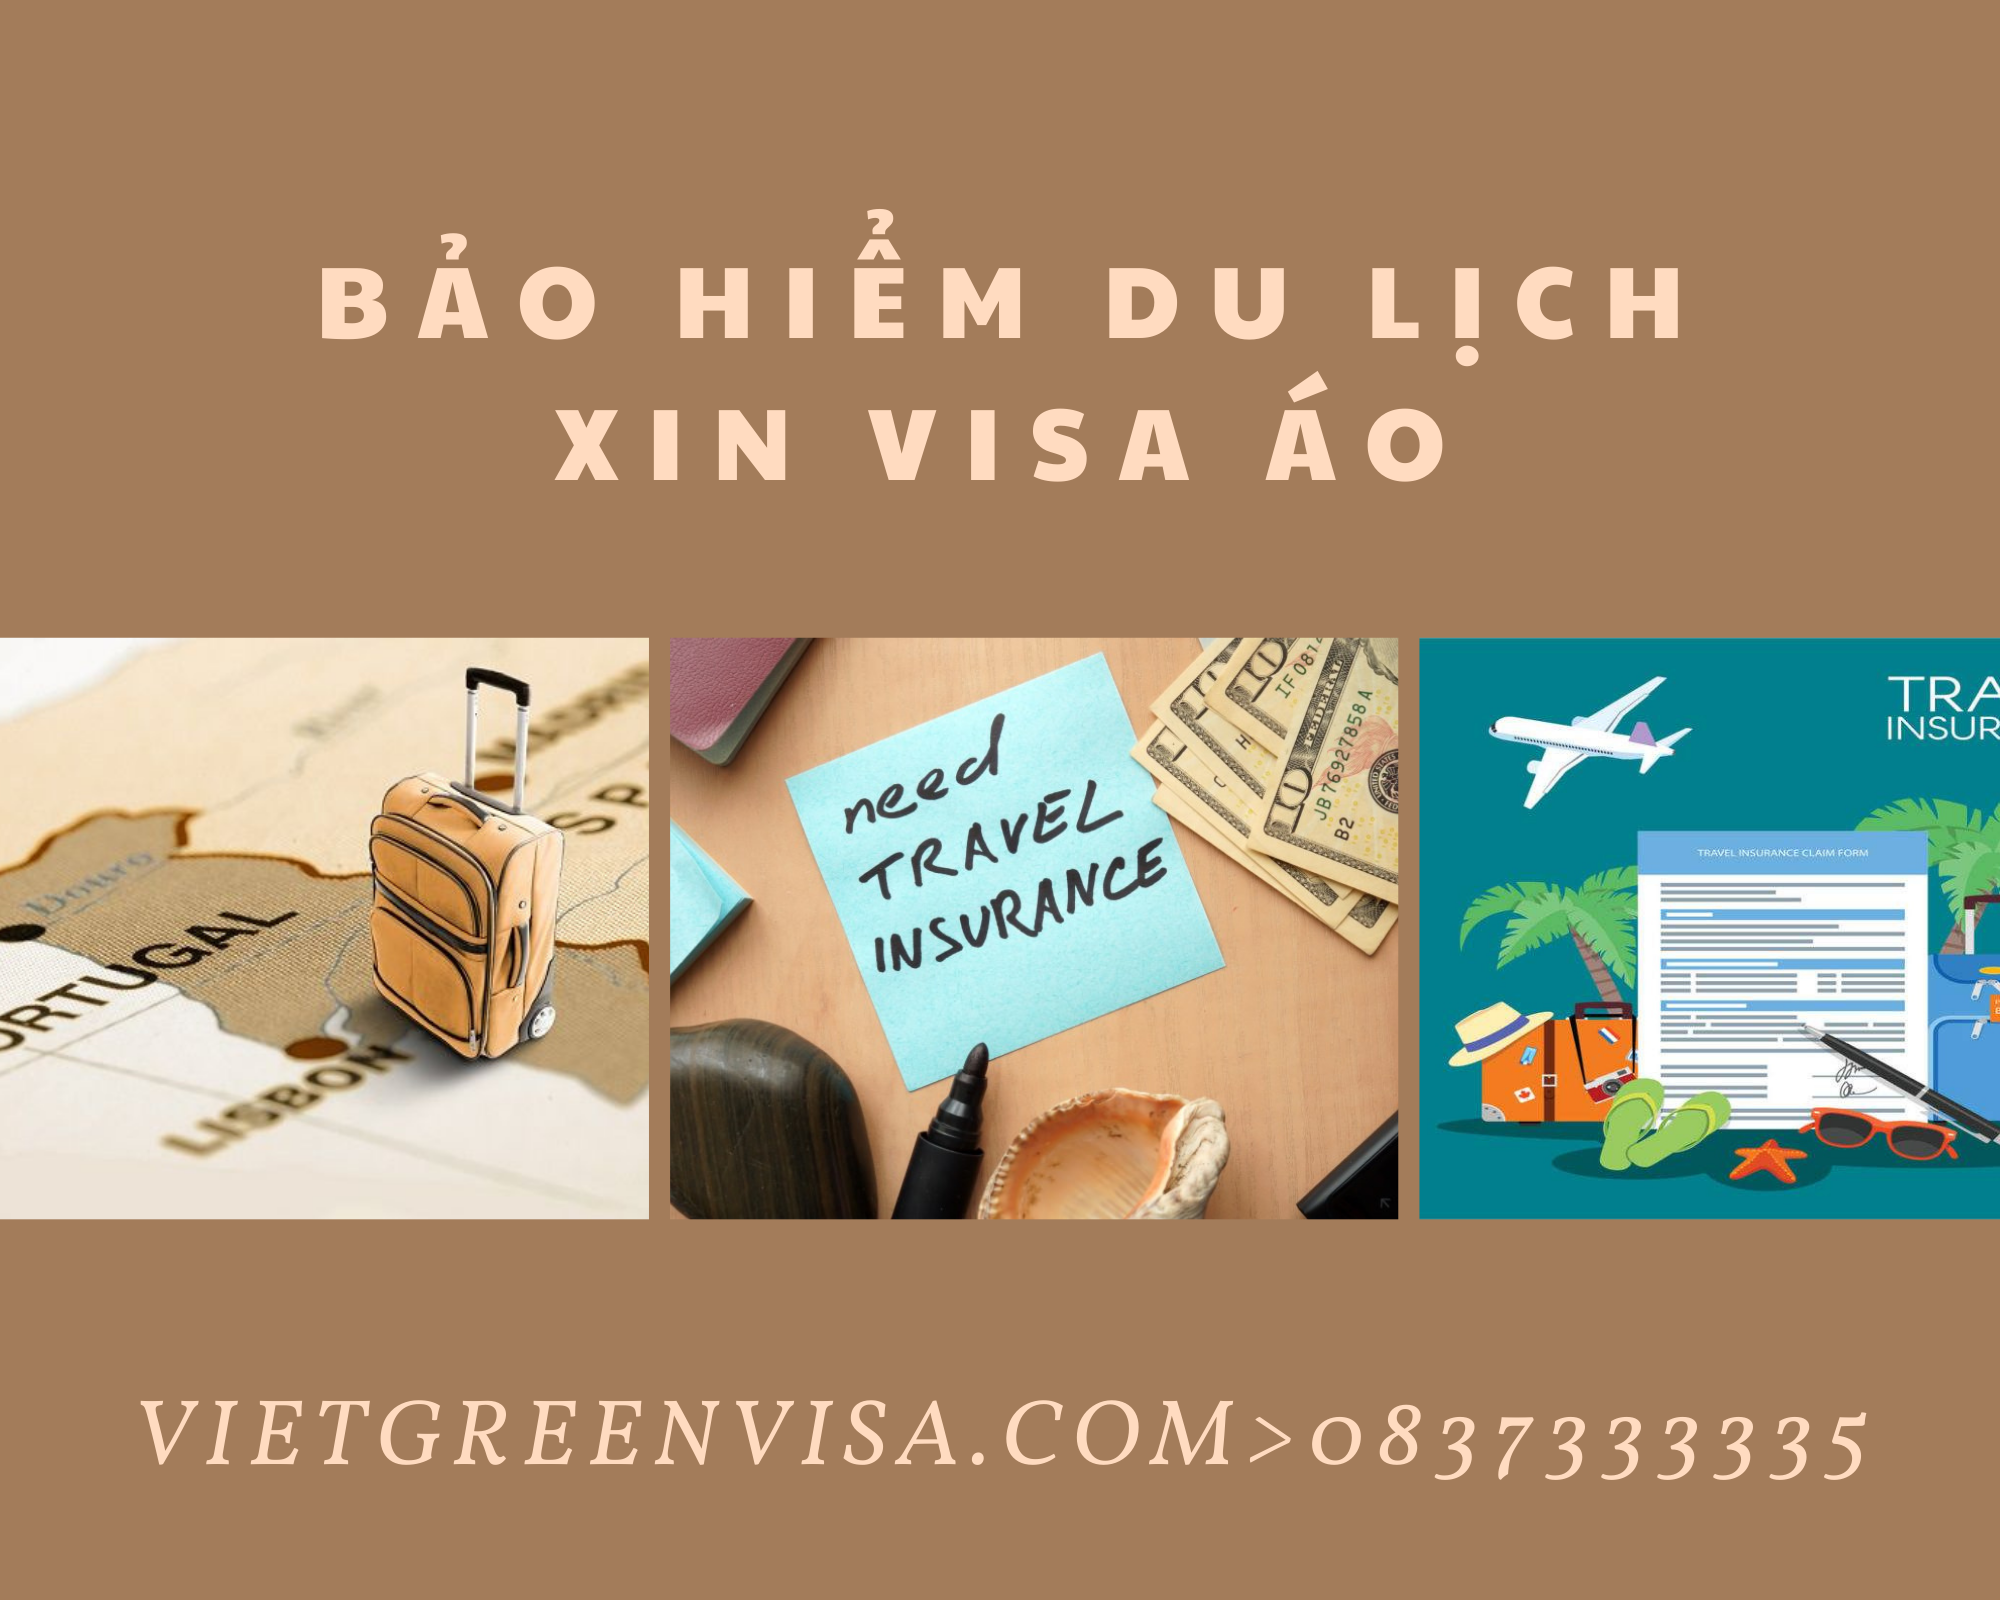 Tư vấn bảo hiểm du lịch xin visa Áo giá tốt nhất